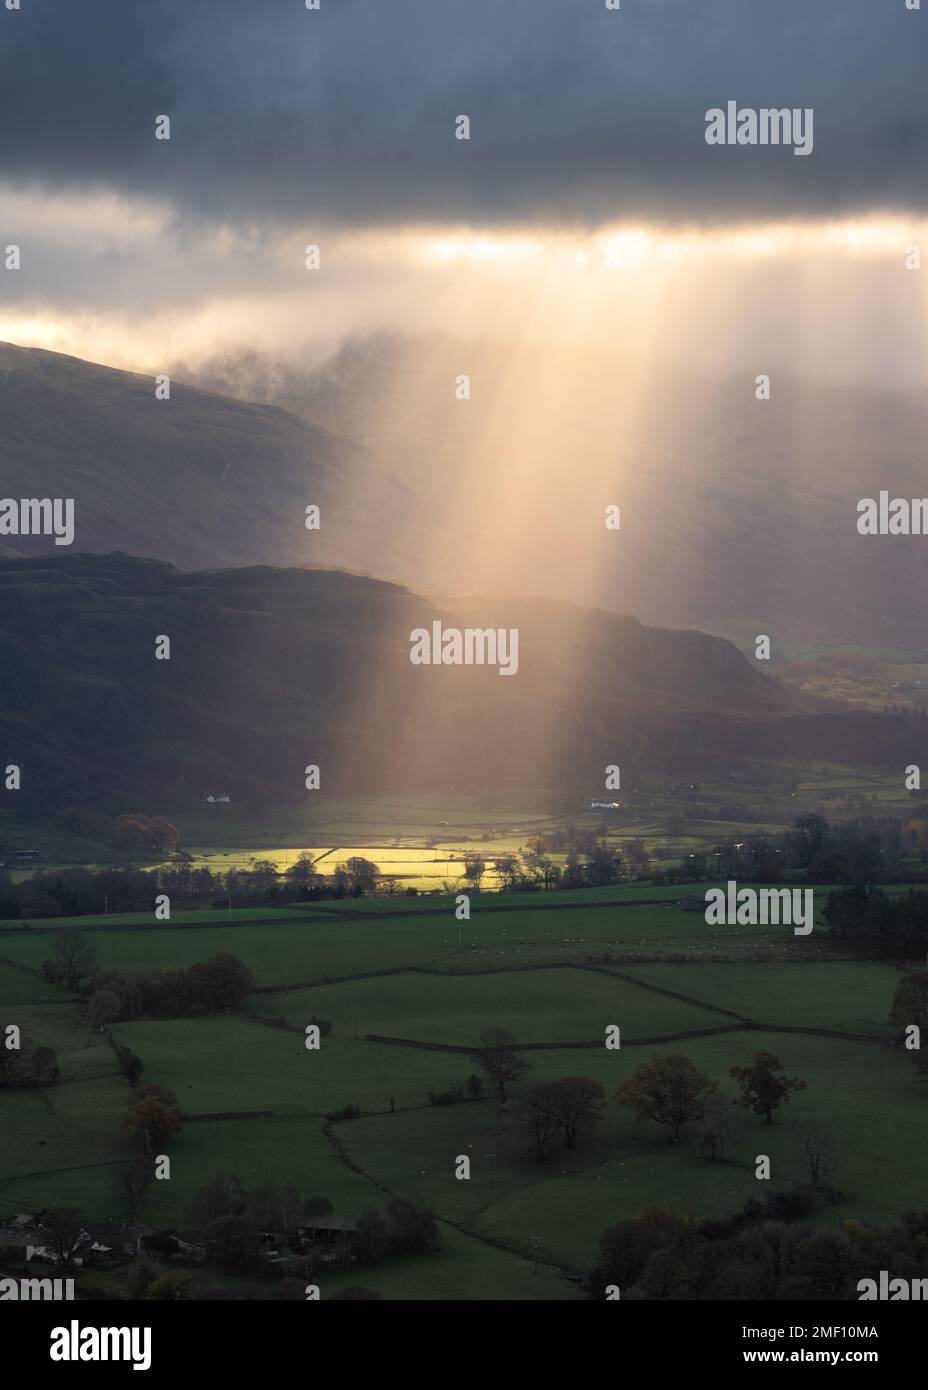 Raggi di luce che brillano attraverso nuvole buie e drammatiche tempeste sui campi verdi nella campagna britannica in una mattinata estiva. Lake District, Regno Unito. Foto Stock